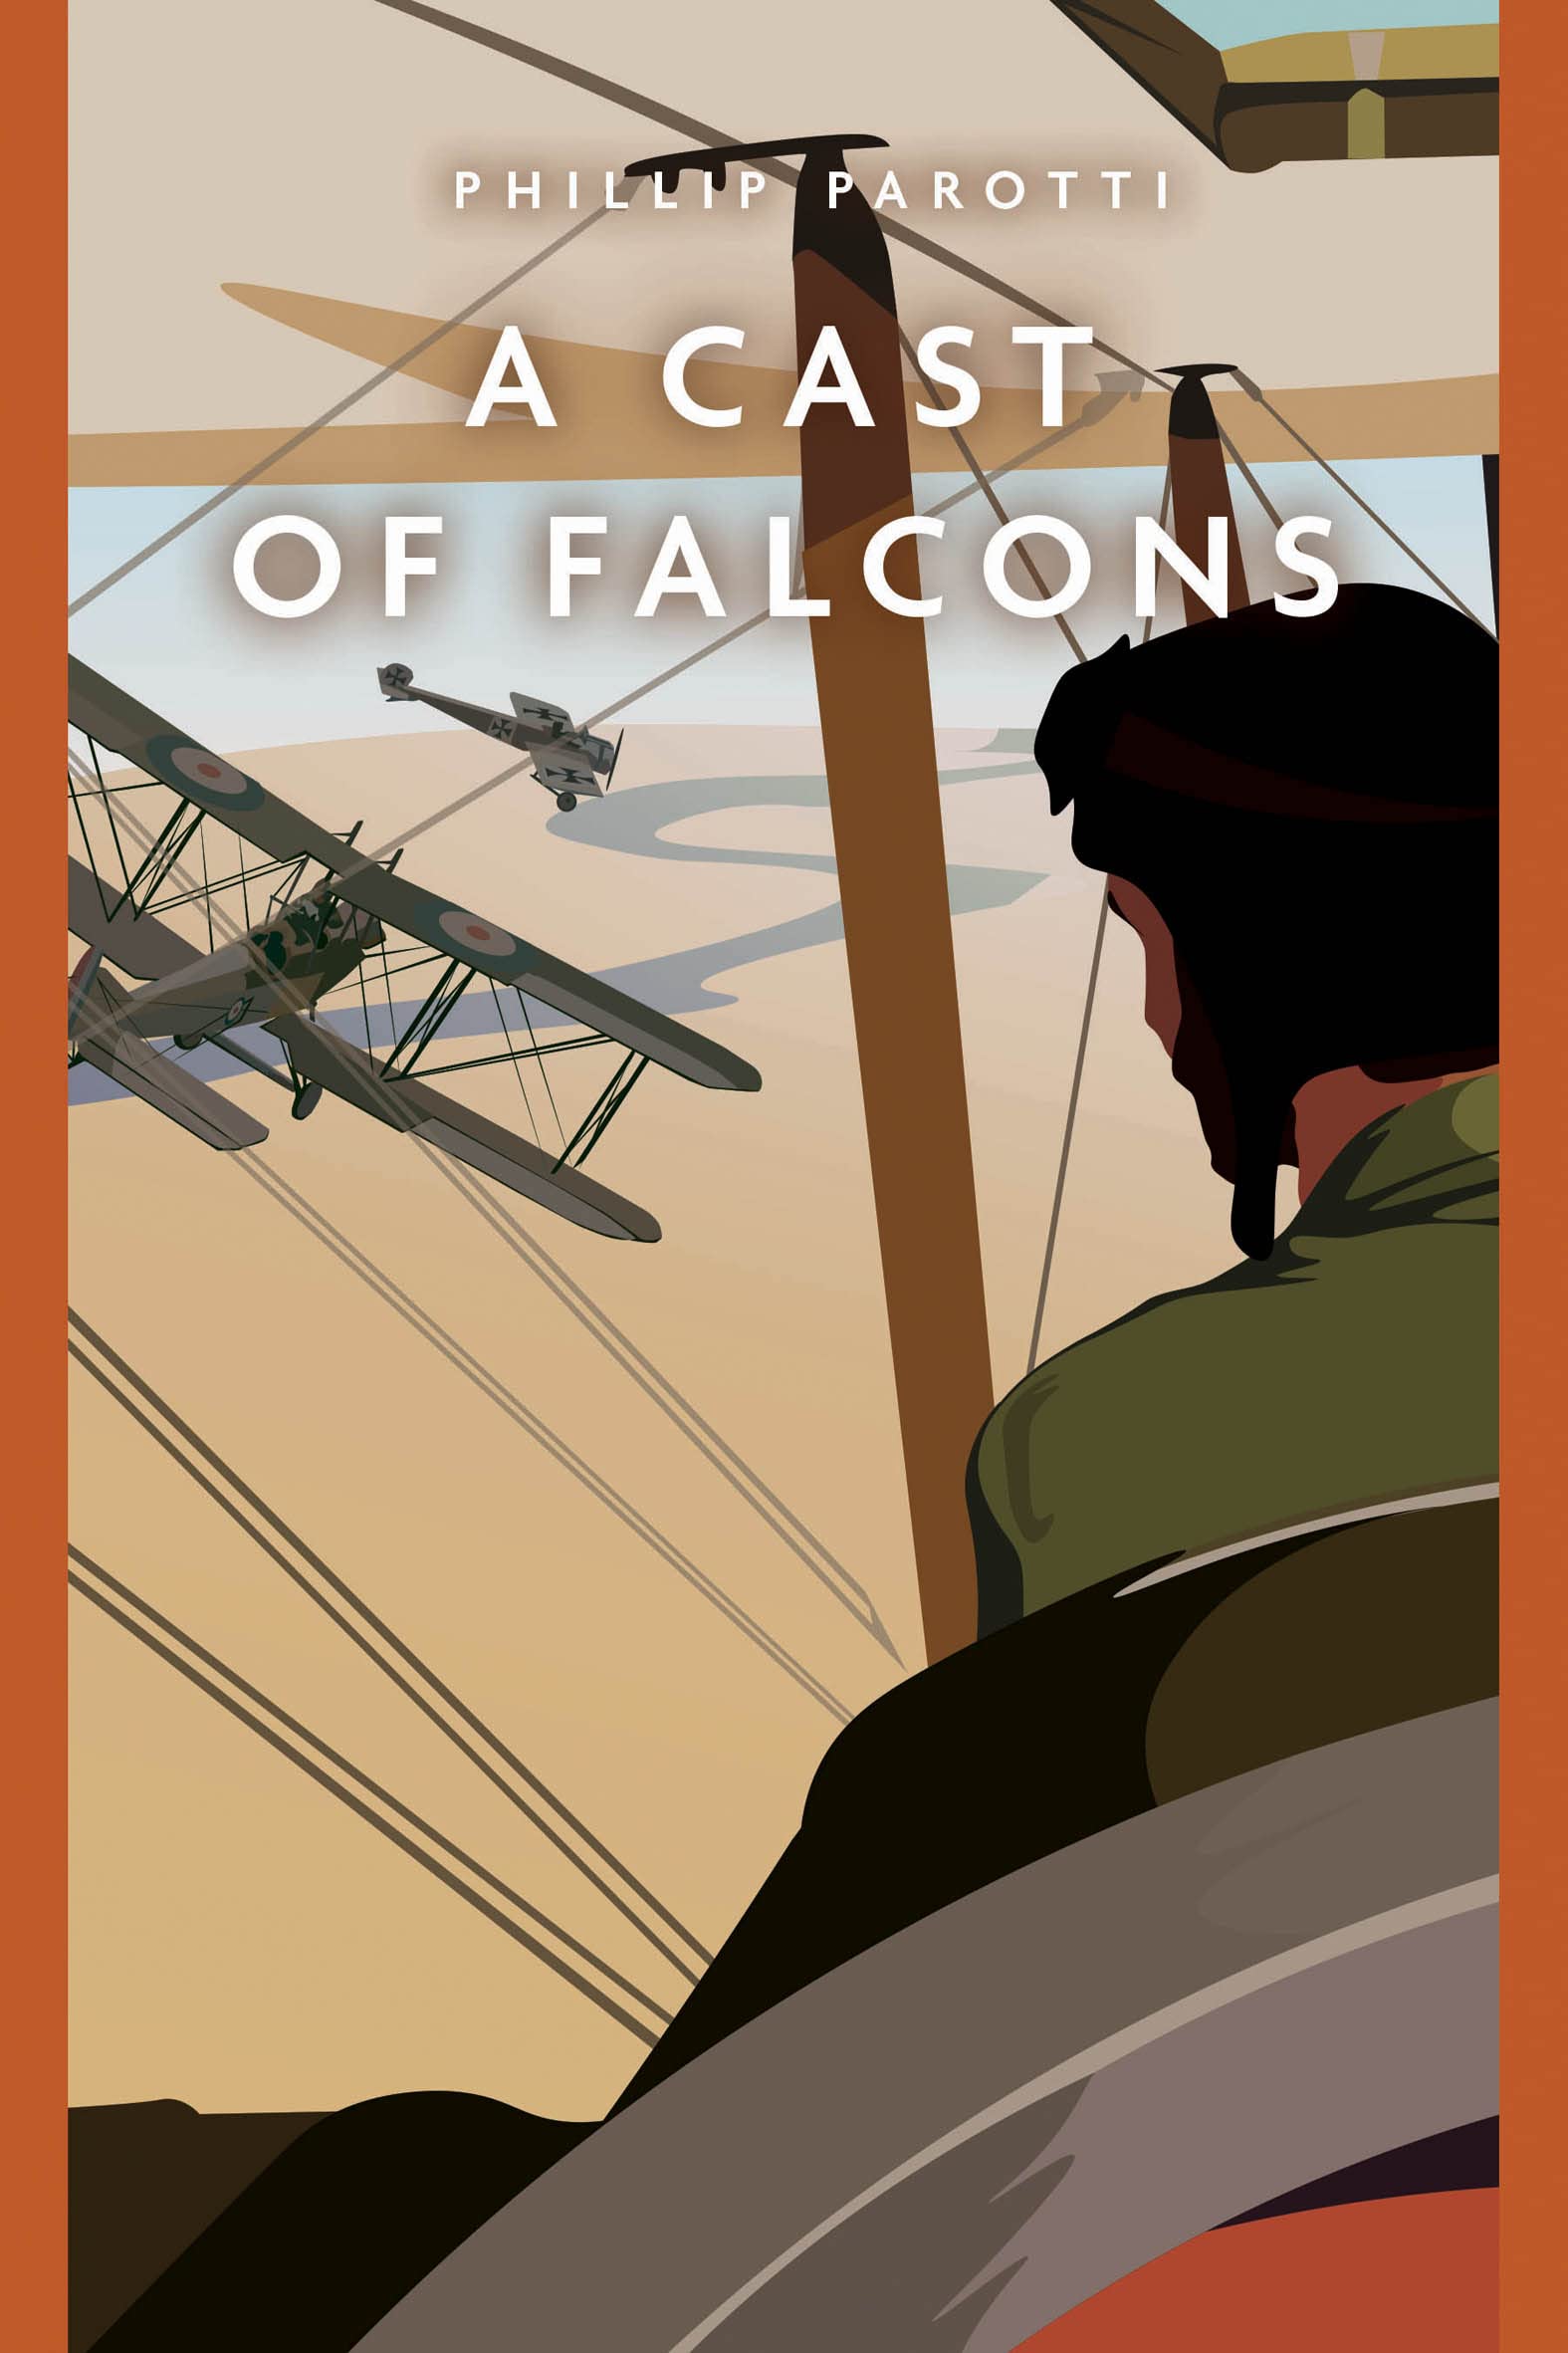 A Cast of Falcons (Casemate Fiction)